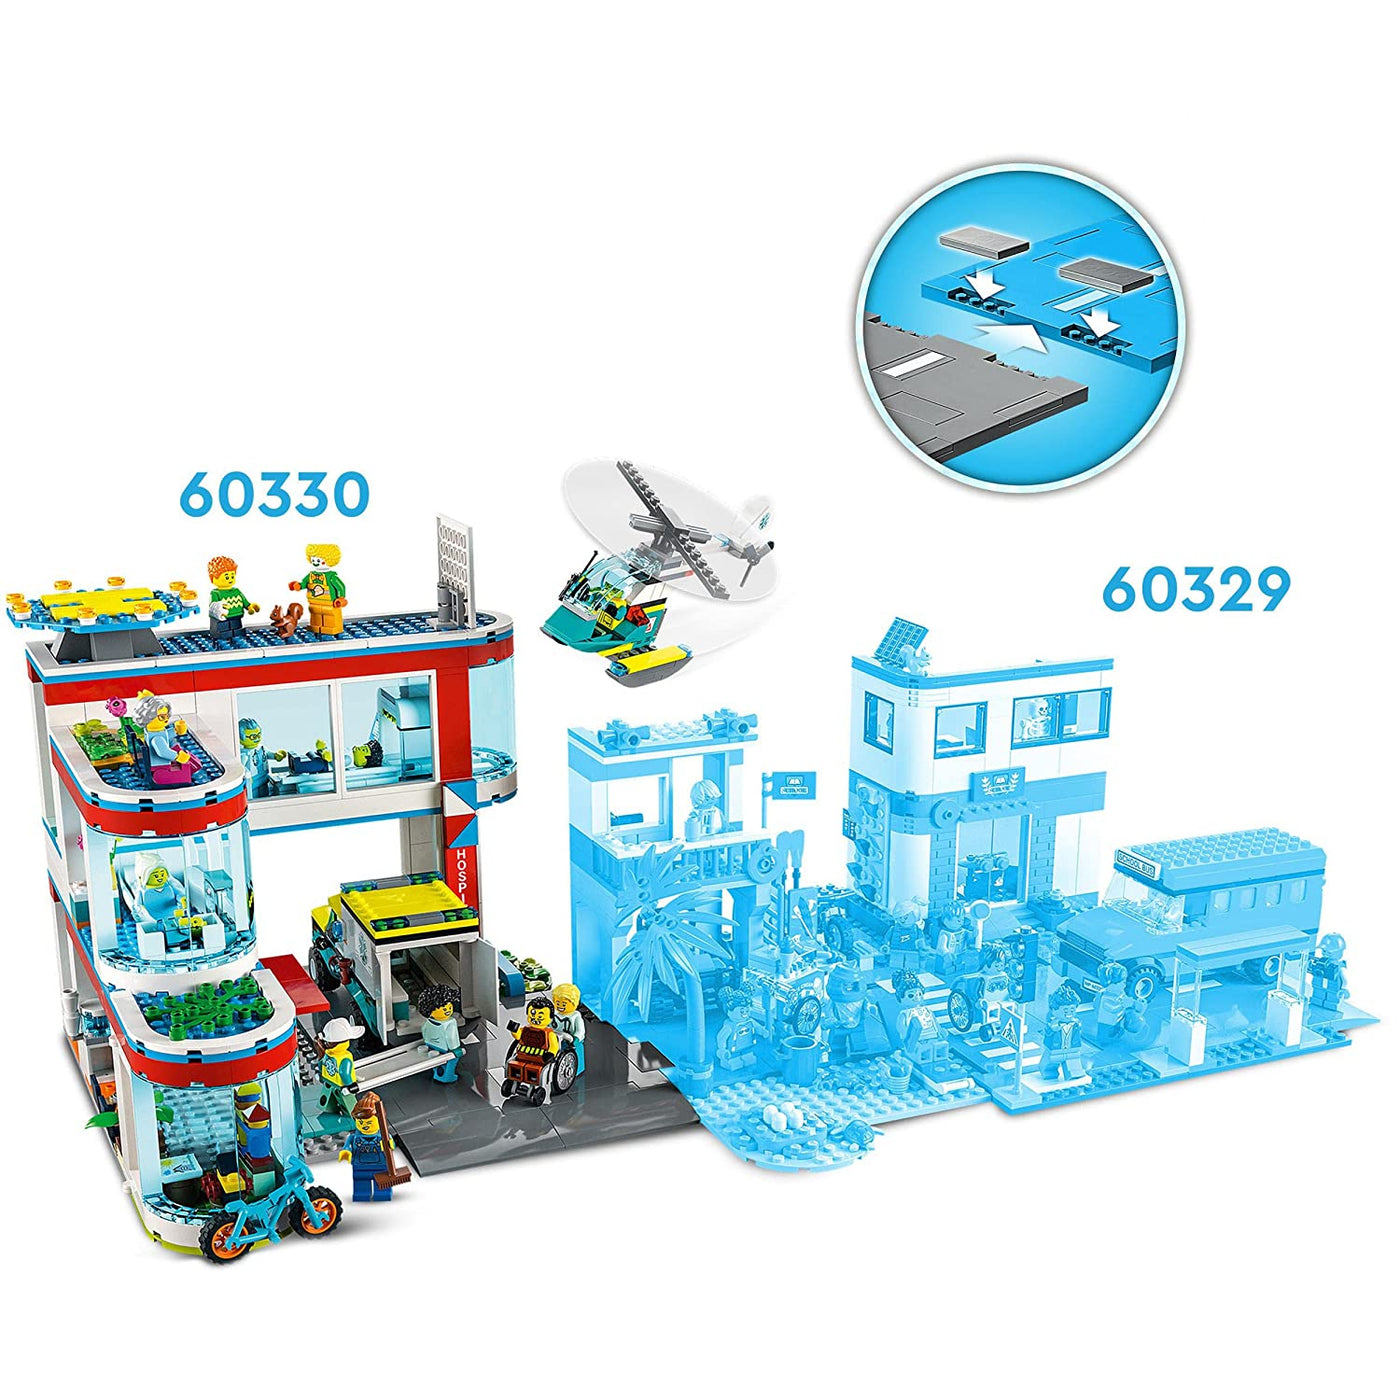 LEGO City: Hospital 60330 | LEGO®